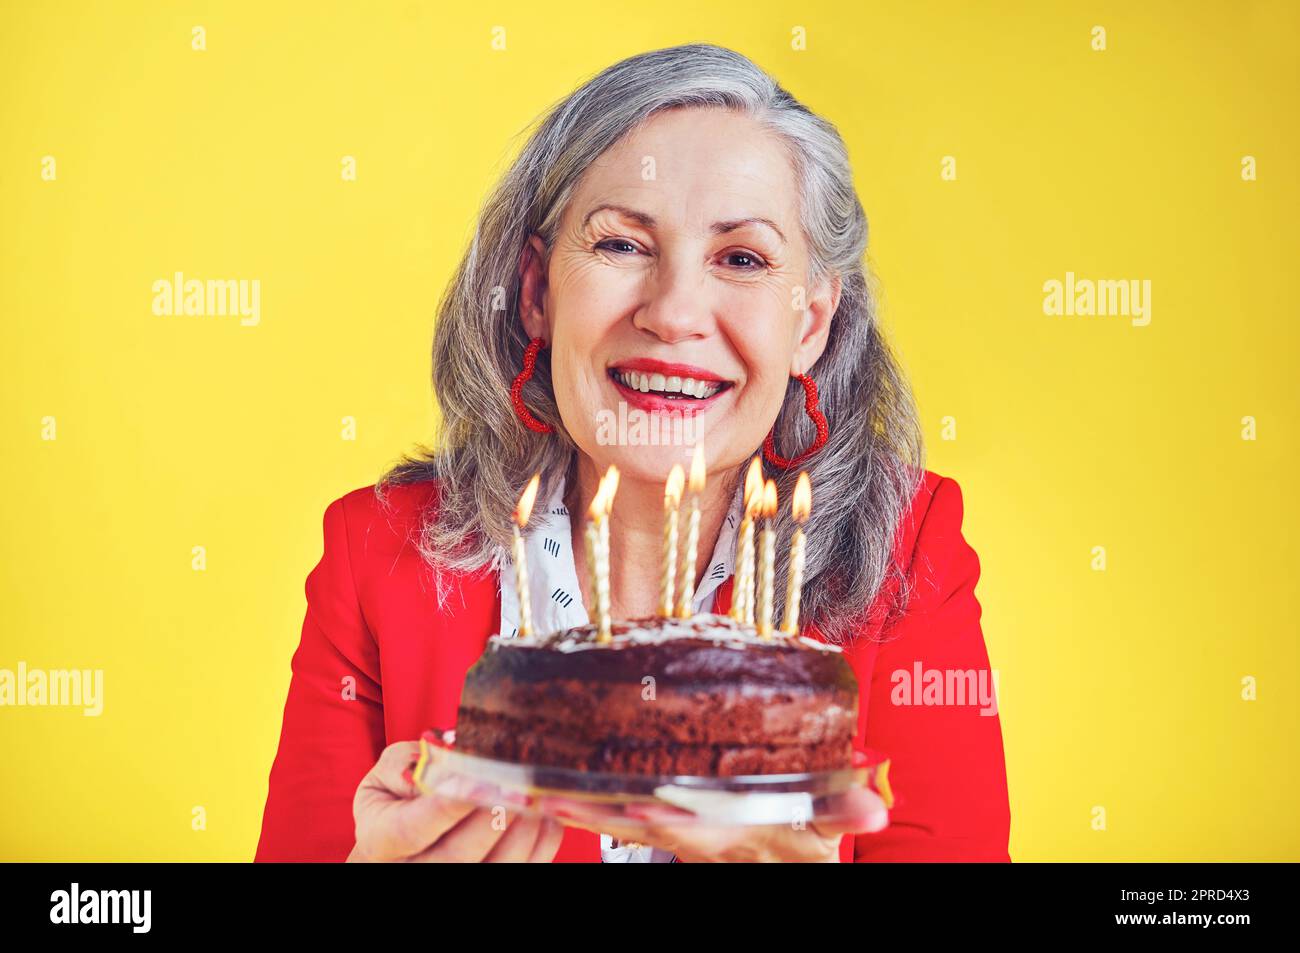 La vita è piena di piccoli momenti dolci. Ritratto di una donna anziana allegra che tiene una torta di compleanno su uno sfondo giallo. Foto Stock